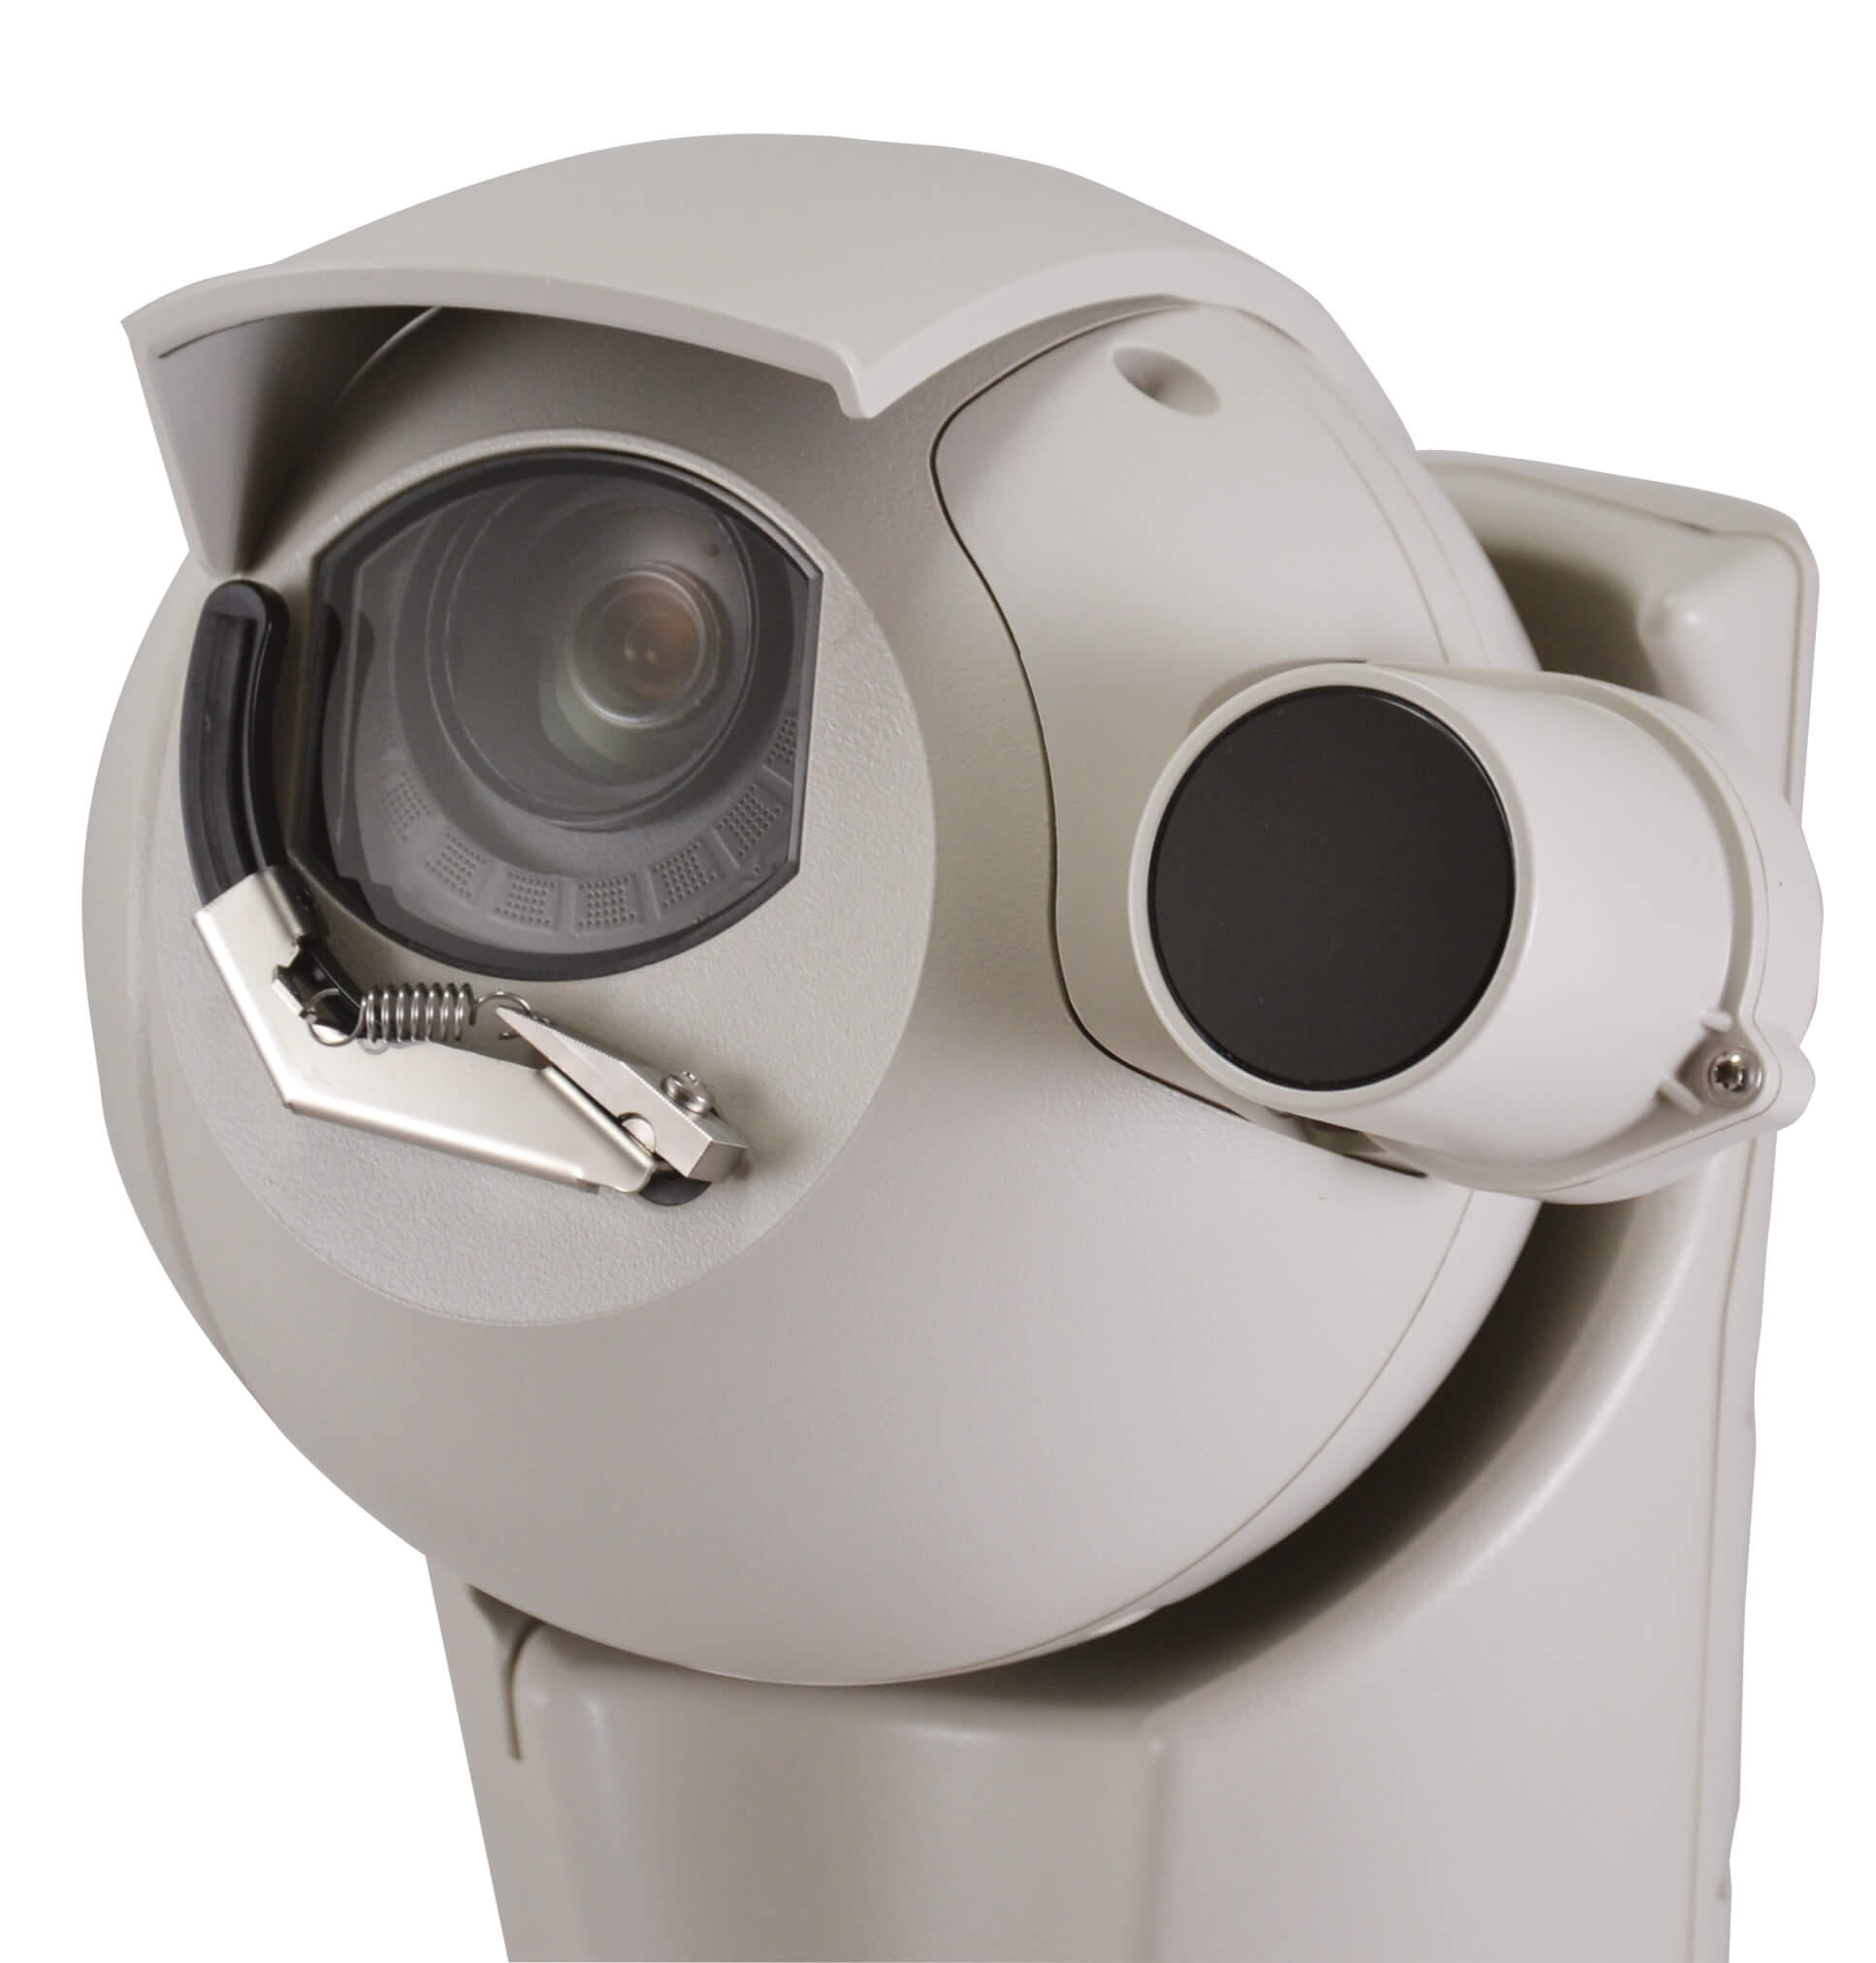 Kamera specjalistyczna przystosowana do pracy w trudnych warunkach zewnętrznych